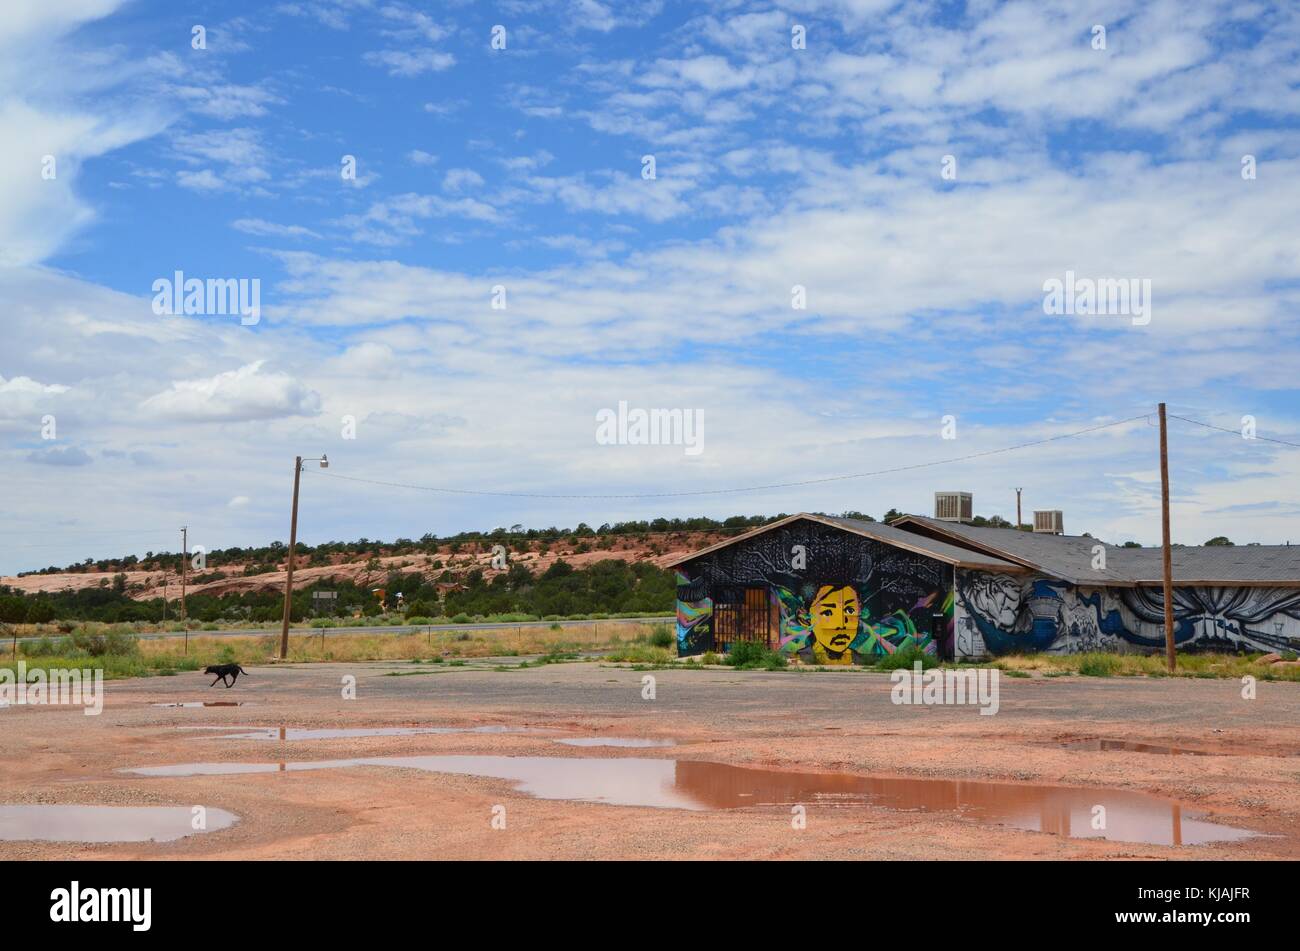 Una coperta di graffiti e un palazzo tre zampe cane nero nella riserva navajo arizona vicino a pagina Foto Stock